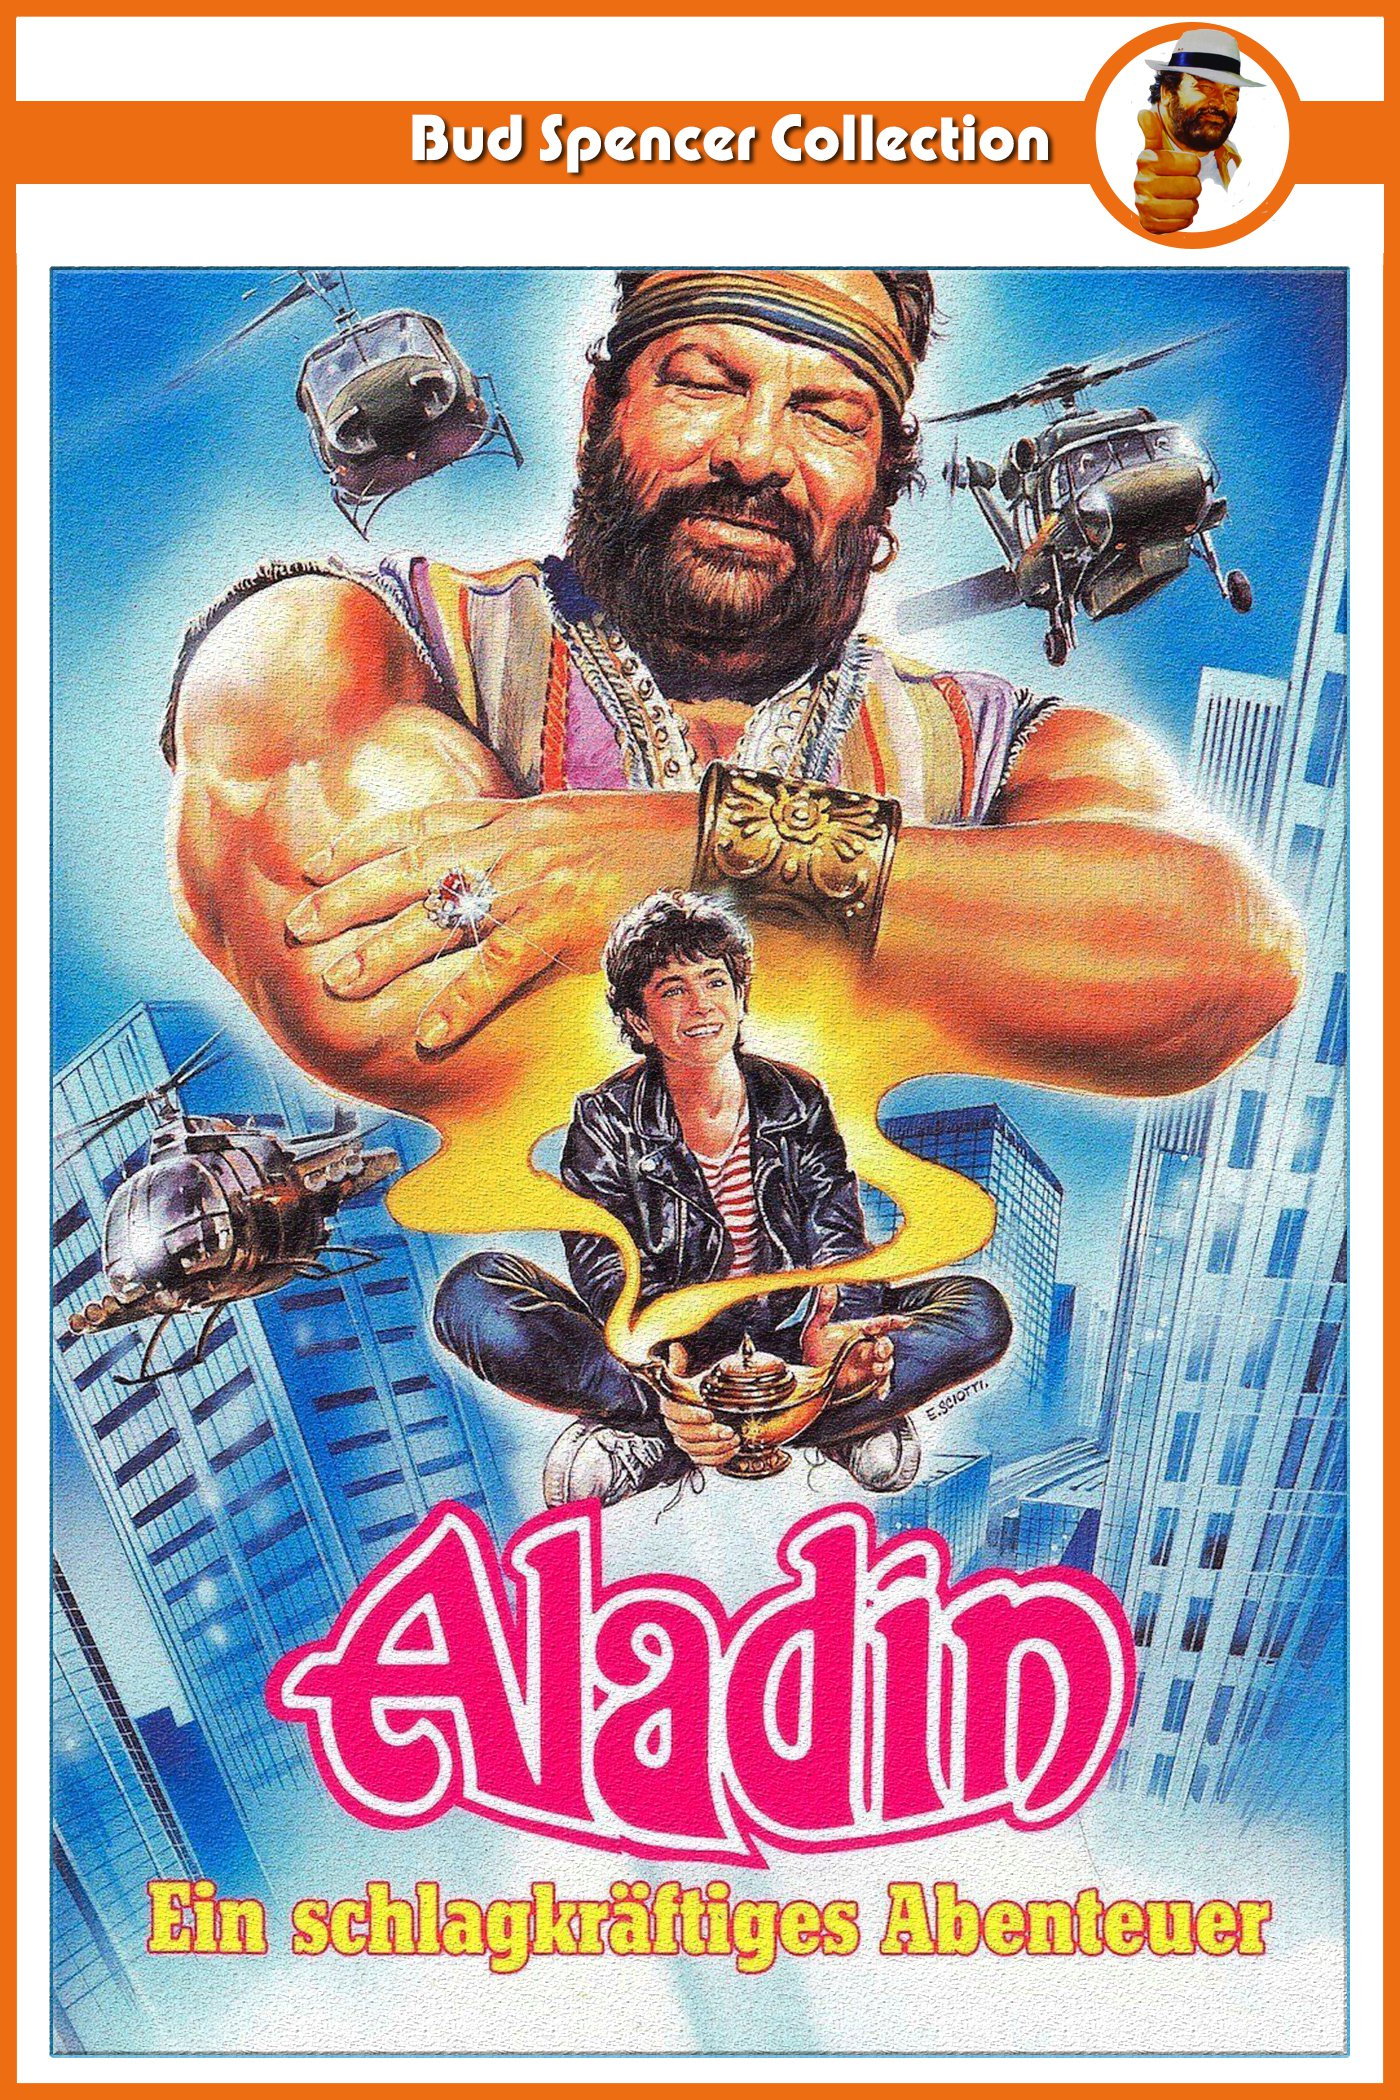 Plakat von "Aladin"